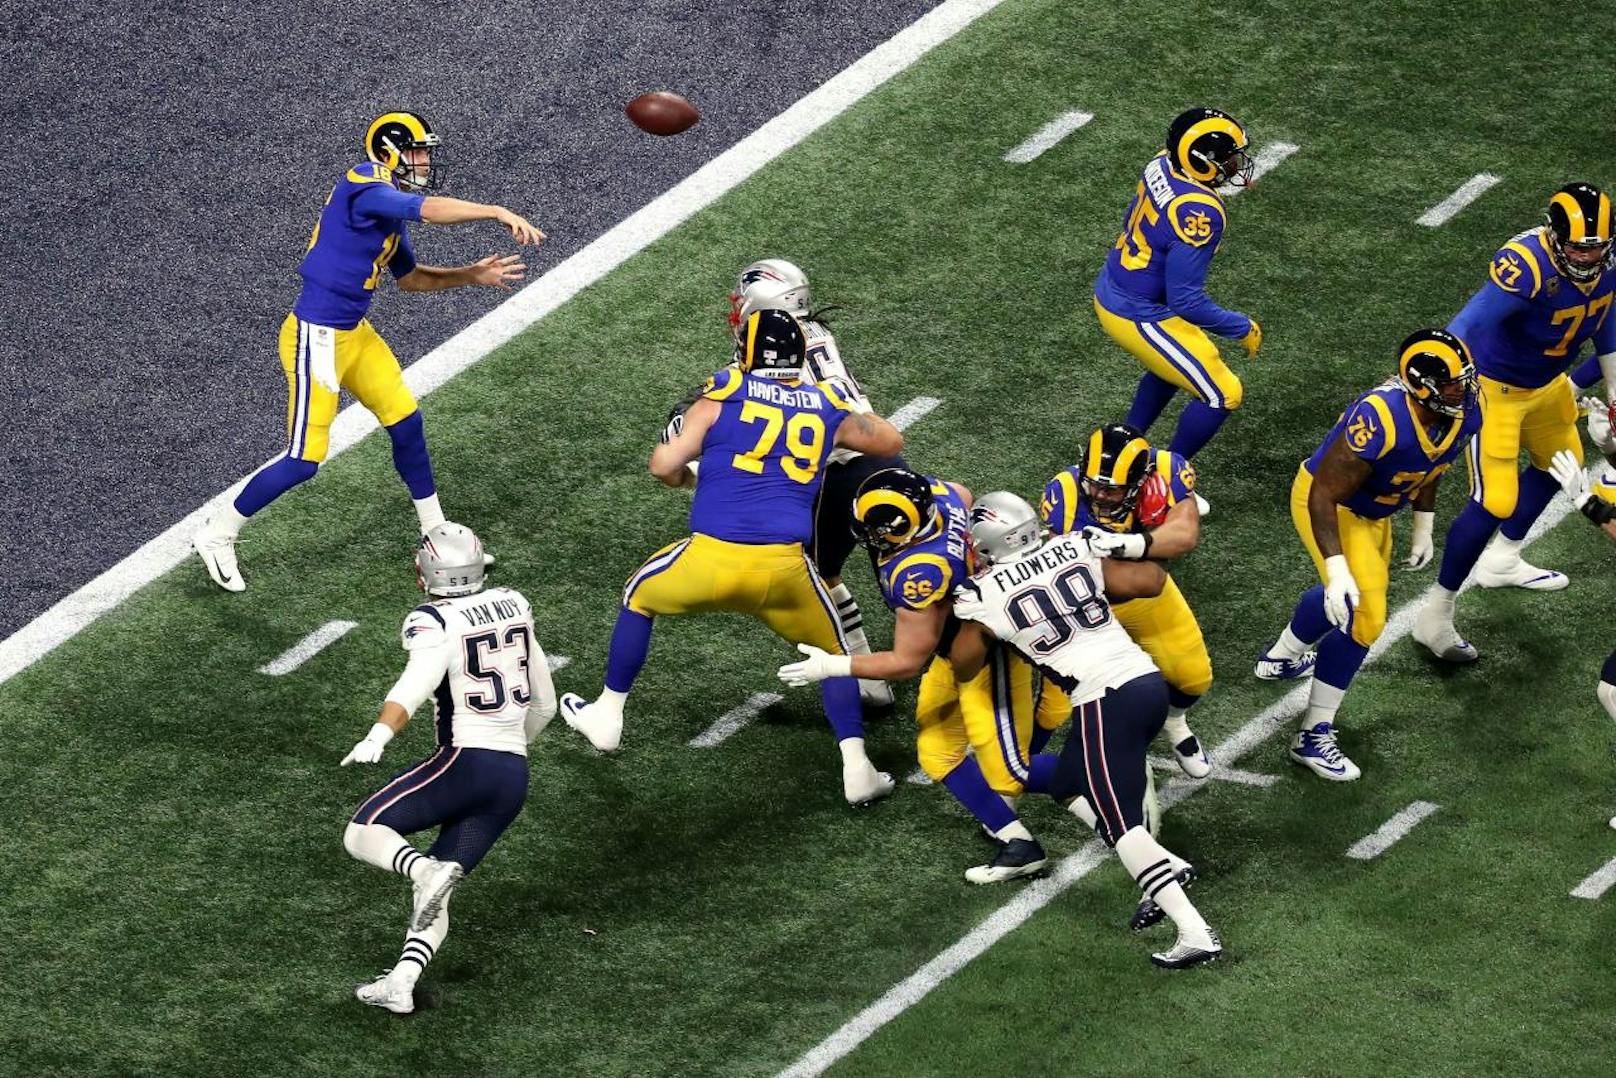 Die besten Bilder der Super Bowl 53 zum Durchklicken!